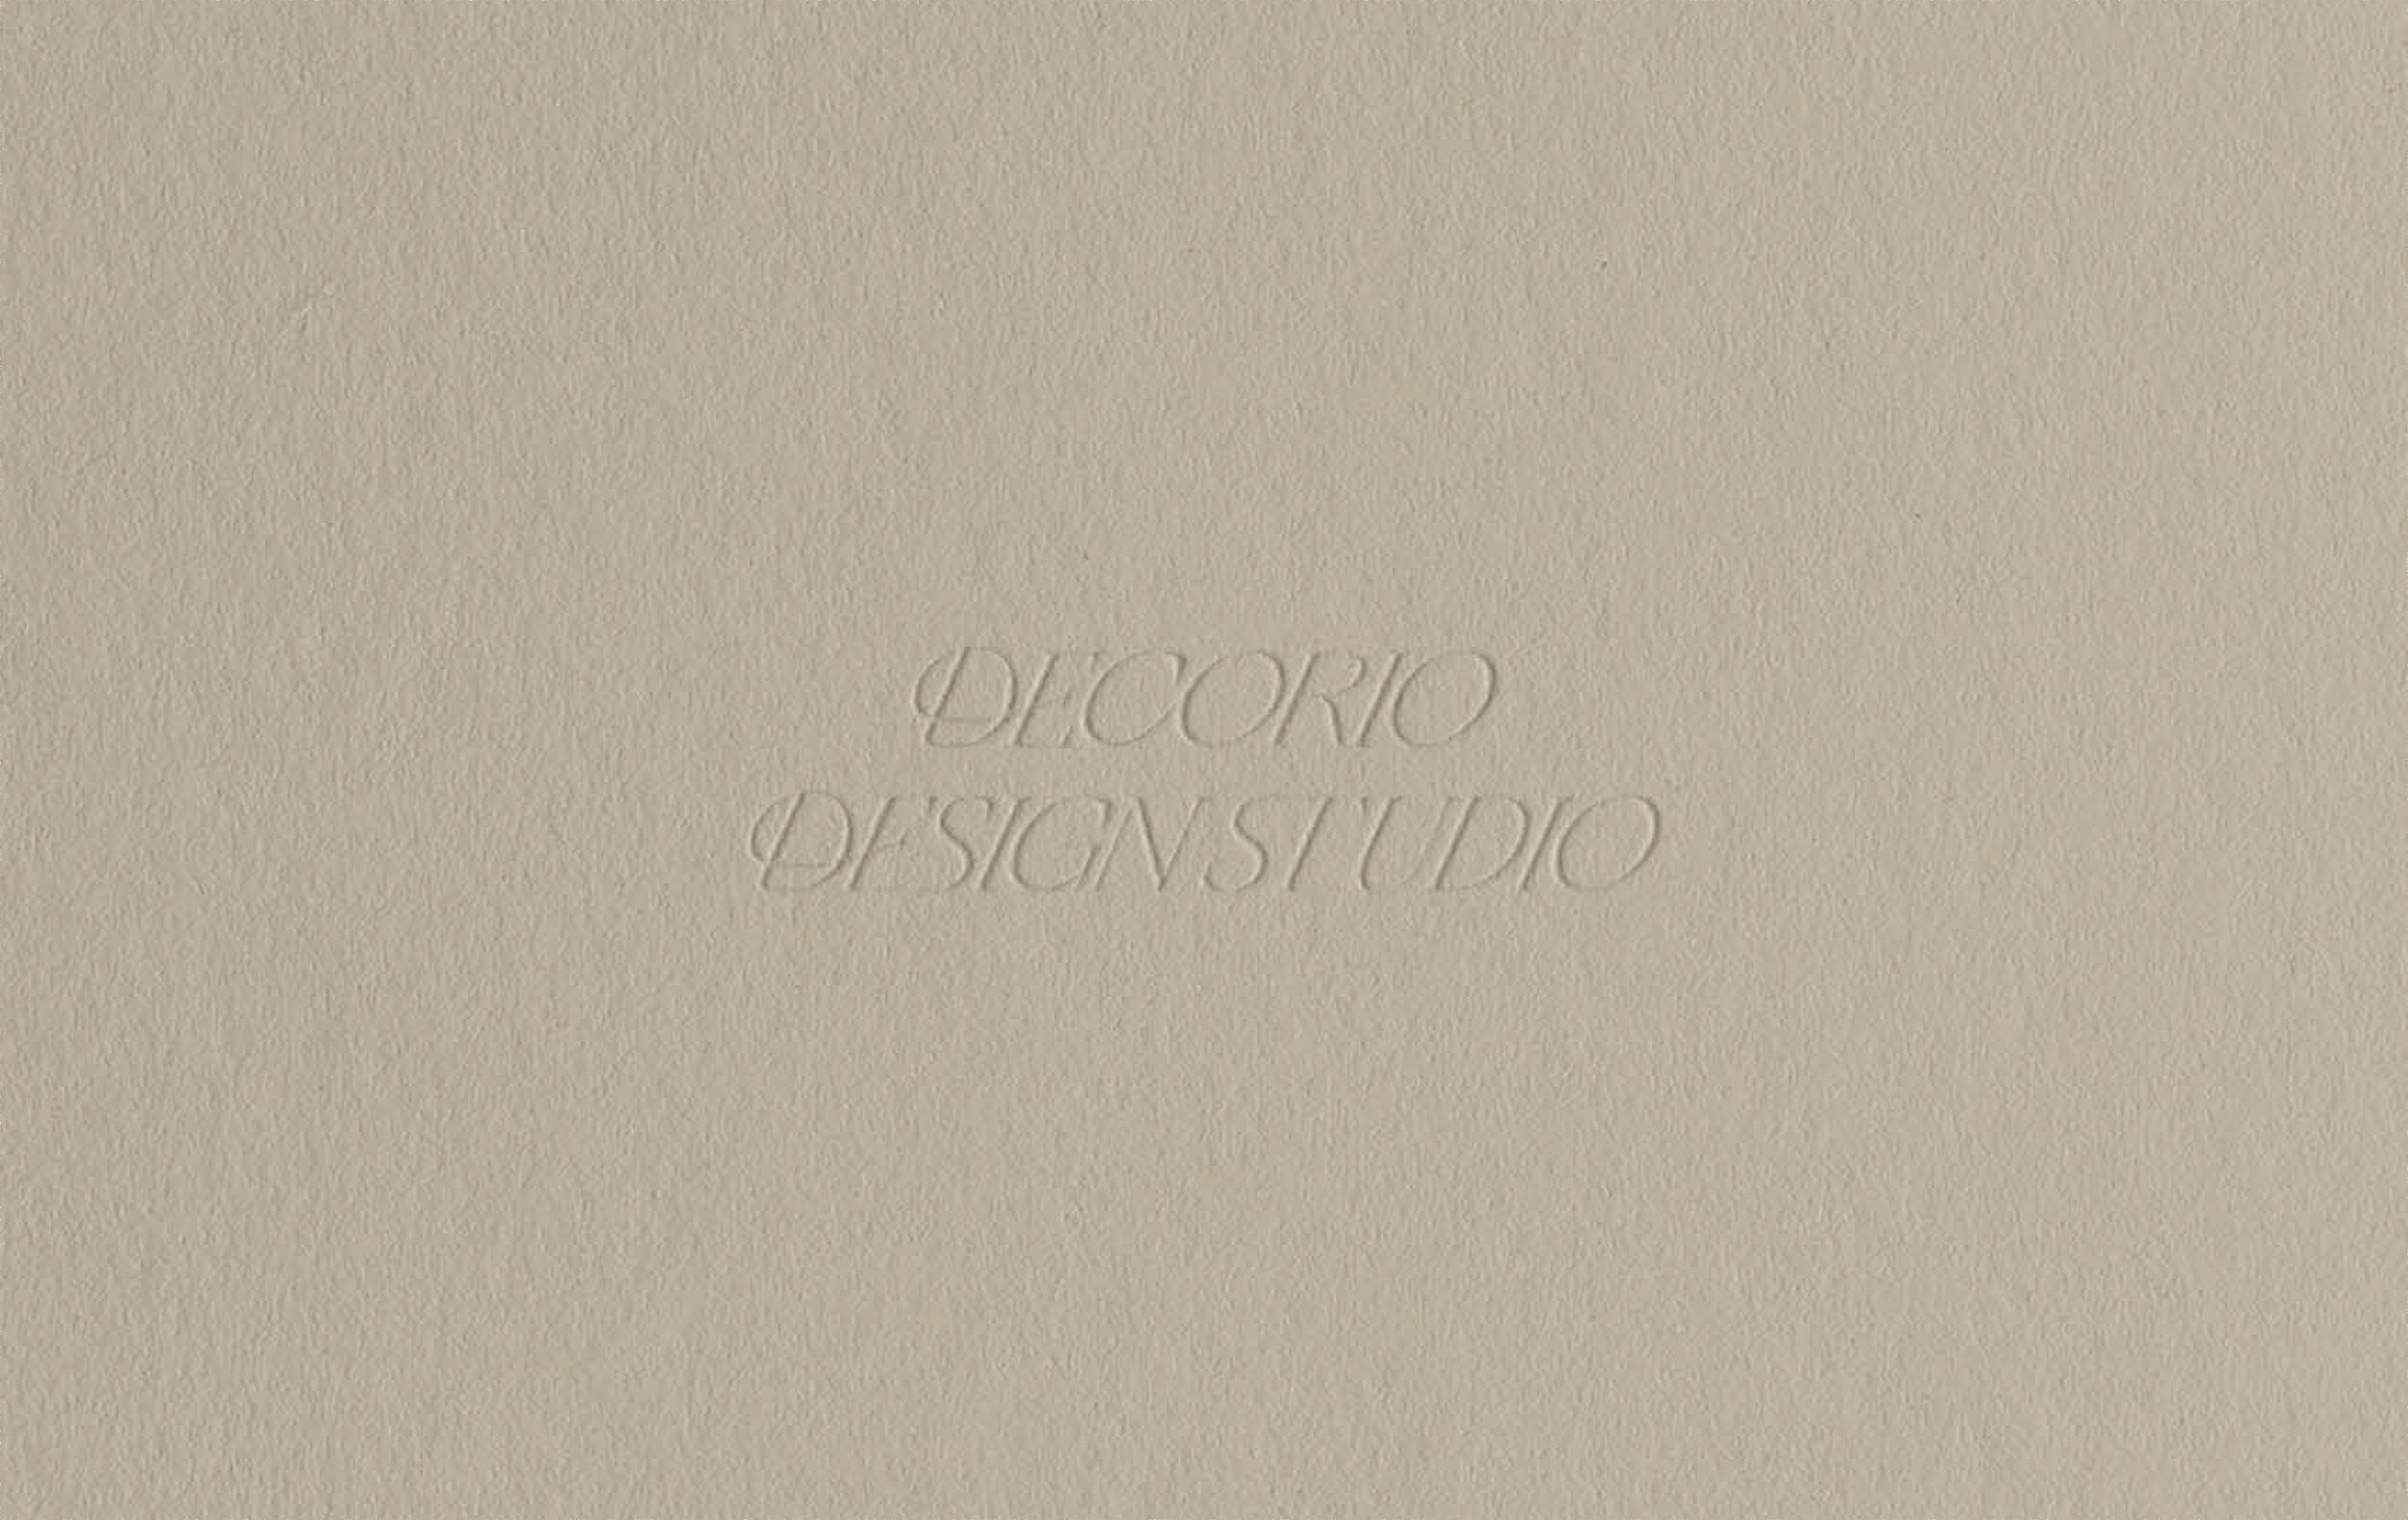 Decorio Design Studio